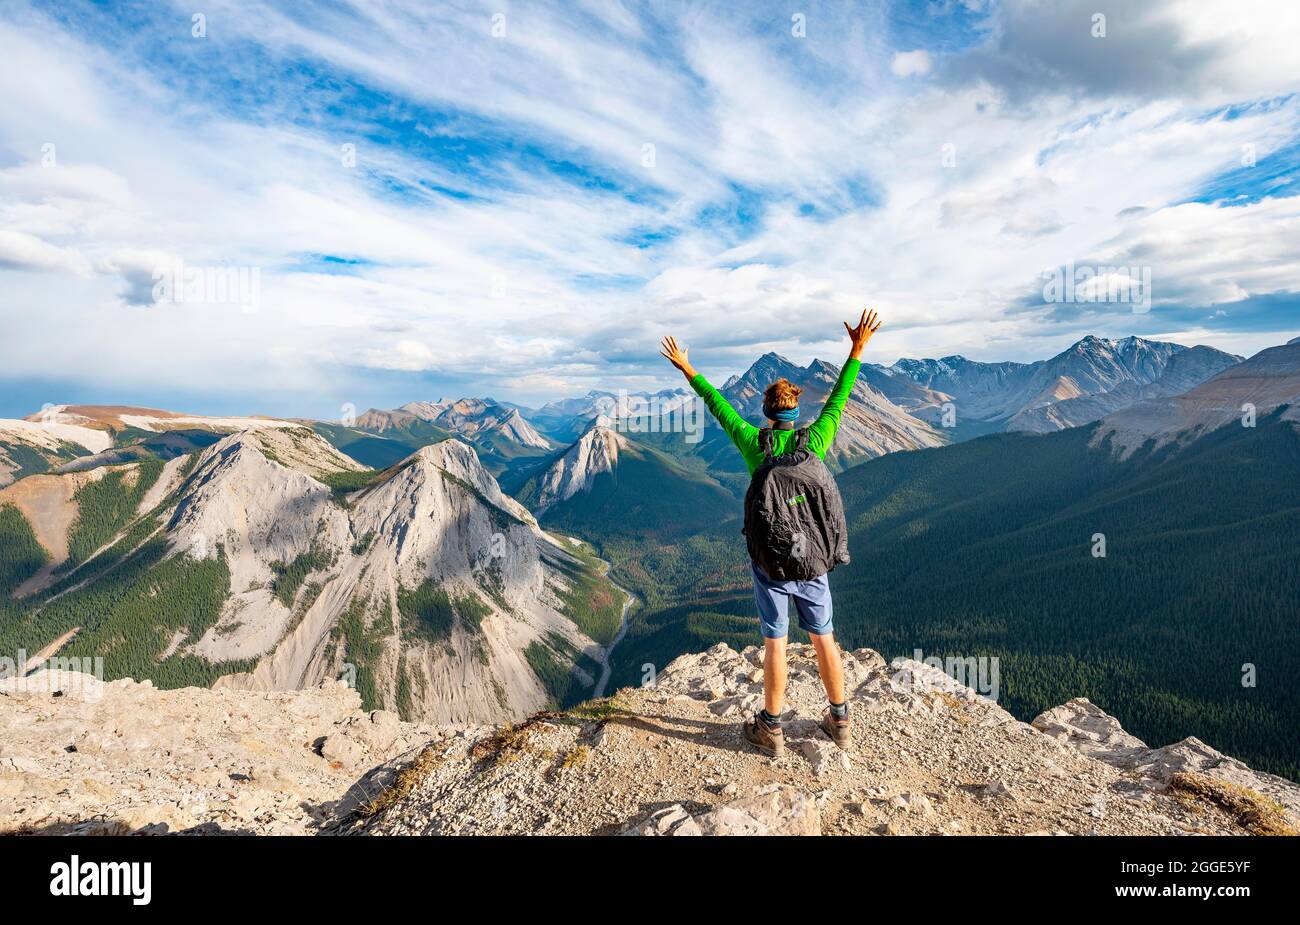 Escursionista allunga le braccia in aria, paesaggio di montagna con valle del fiume e cime, cime con giacimenti di zolfo arancio, rovesciamento montagna, panoramica Foto Stock